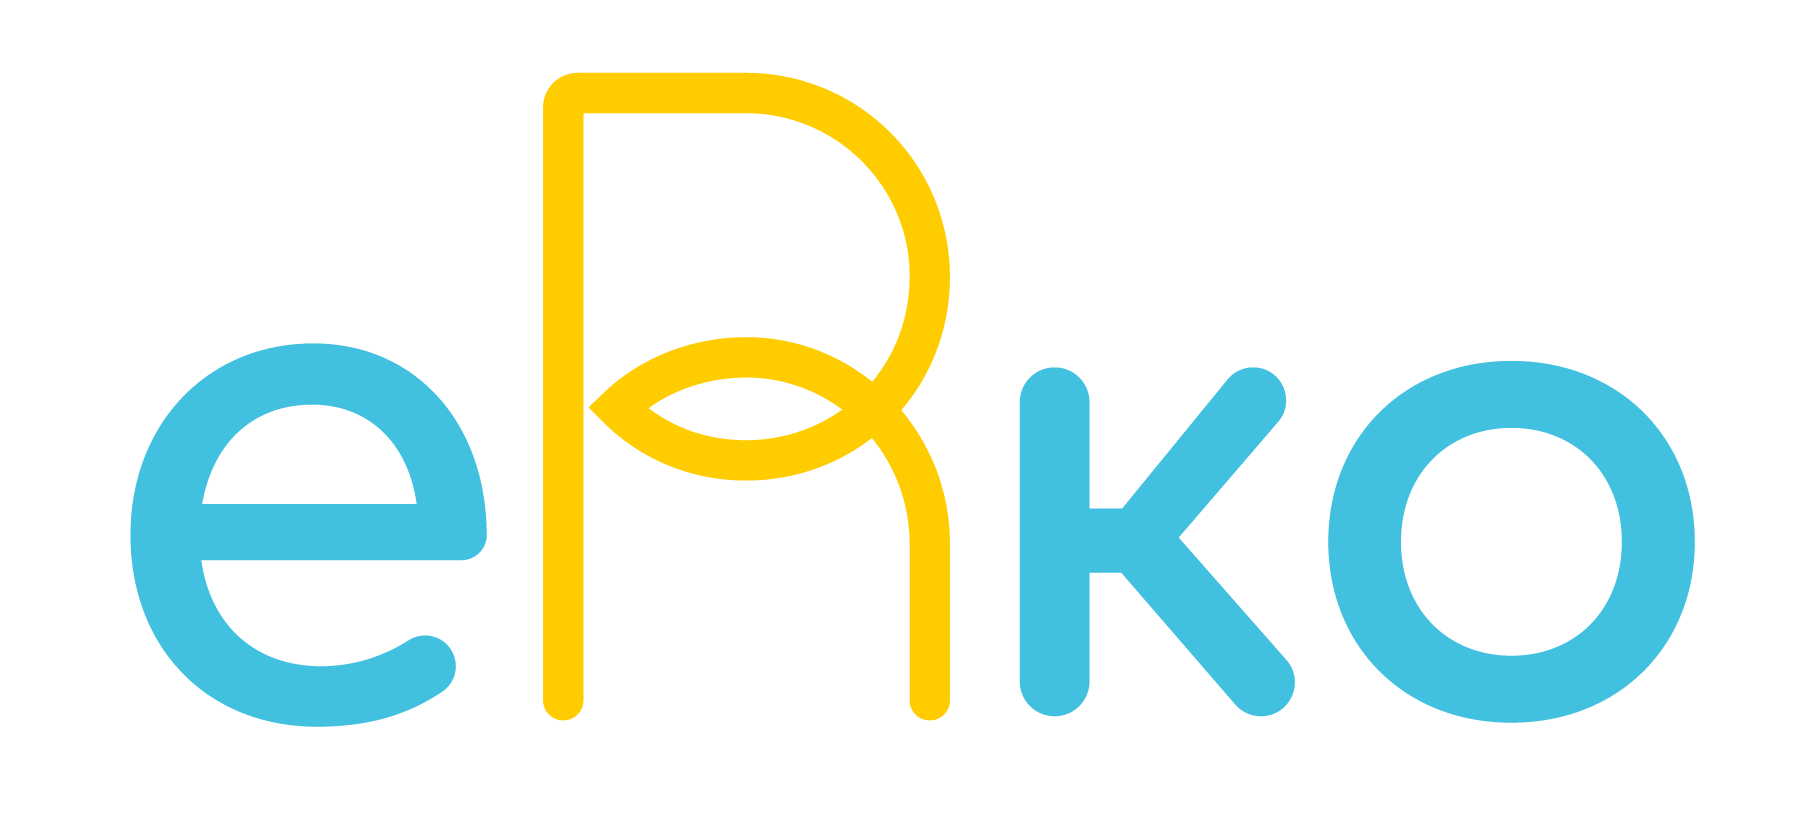 eRko logo